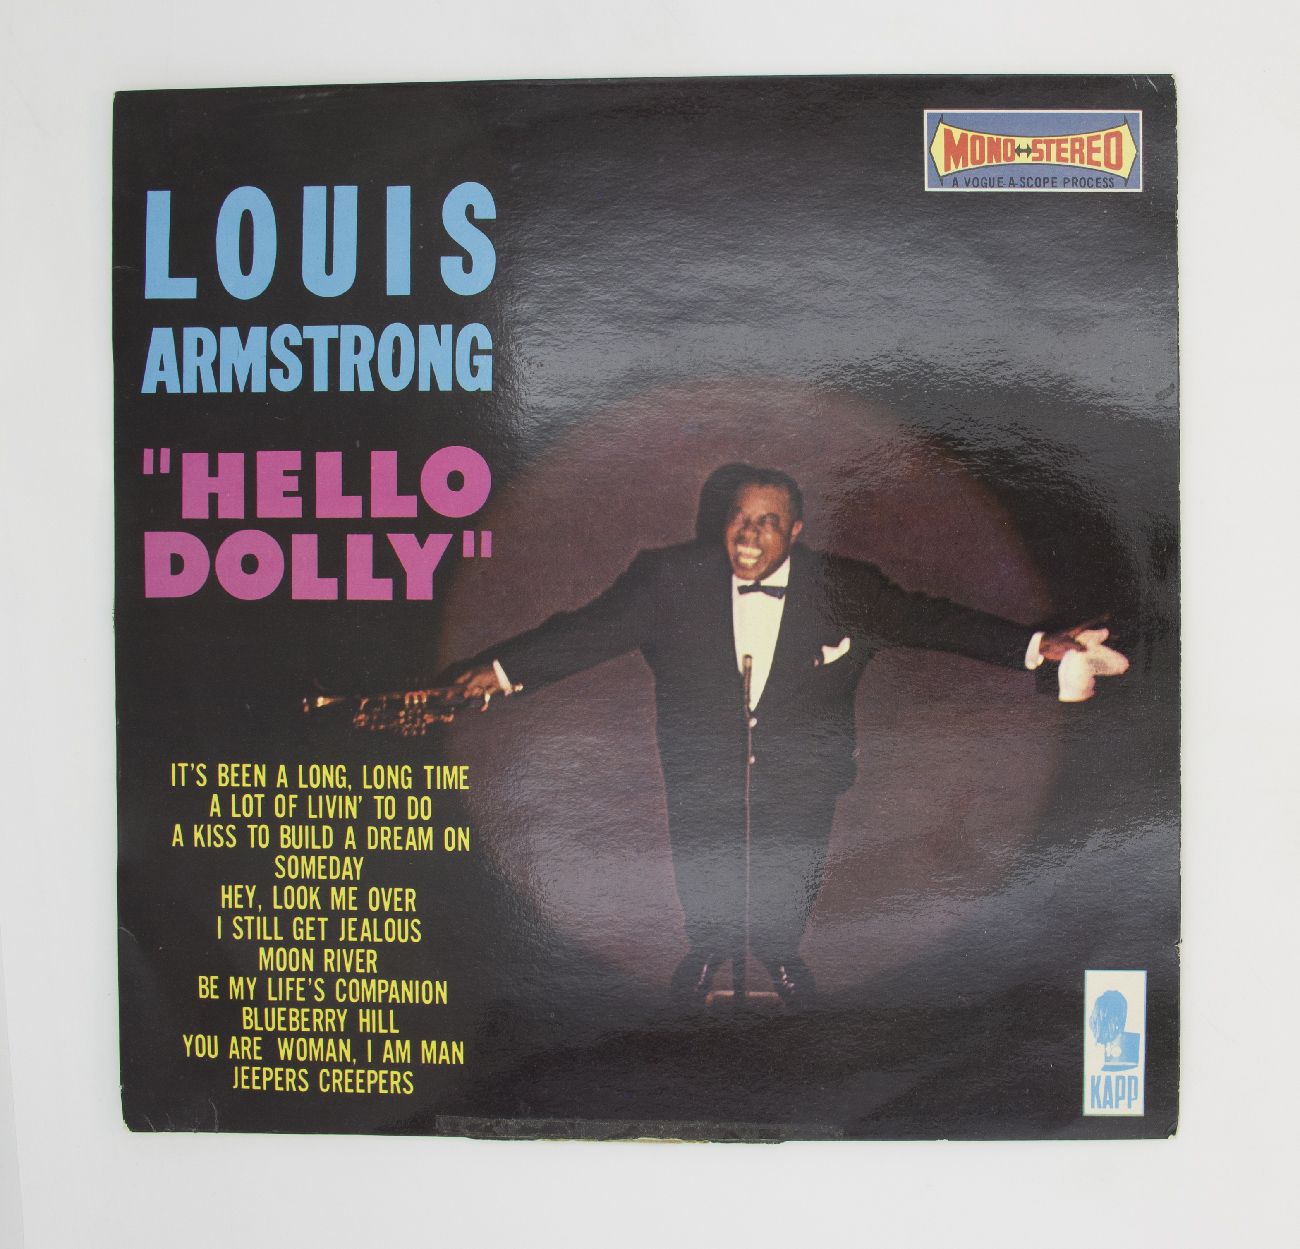 Армстронг хелло. Луи Армстронг пластинка. Louis Armstrong «hello Dolly» альбом. Луи Армстронг кукла. Все звезды Луи Армстронга".